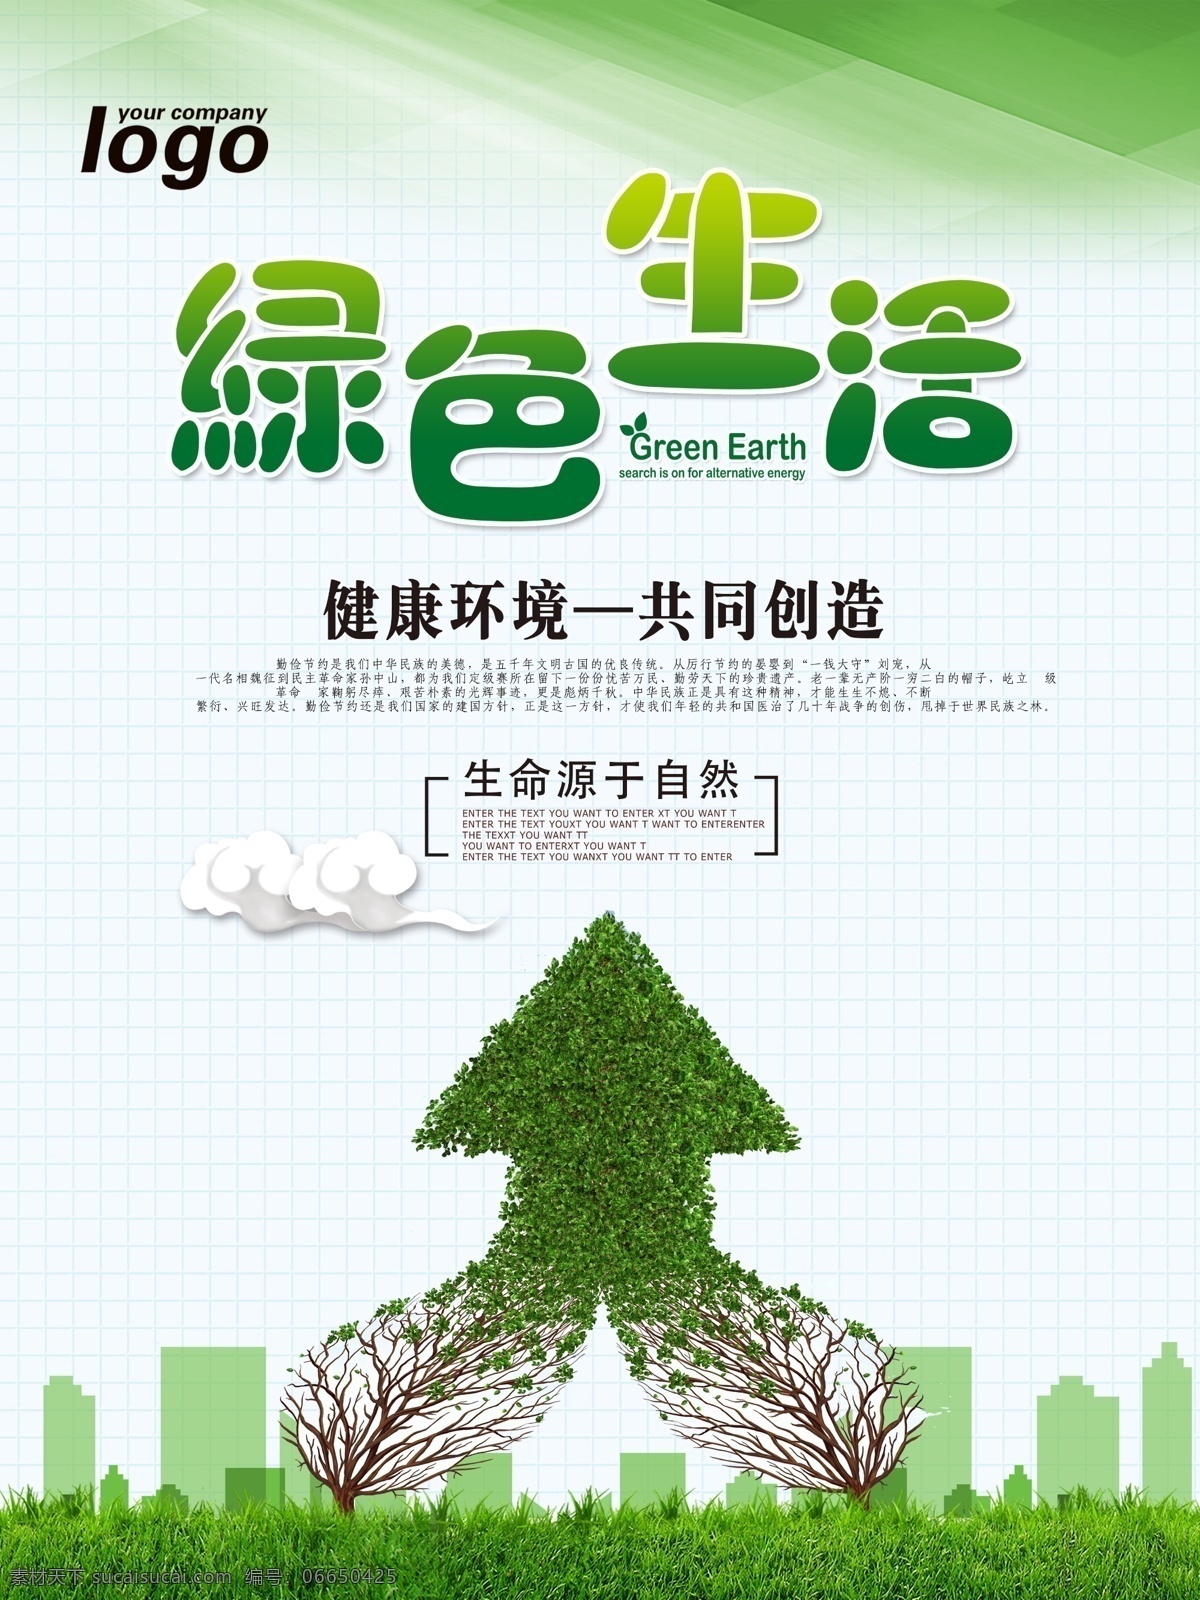 公益海报 绿色生活 树木 绿色 健康 环境 生命源于自然 爱护 保护 珍惜 共同生活 美德 公益